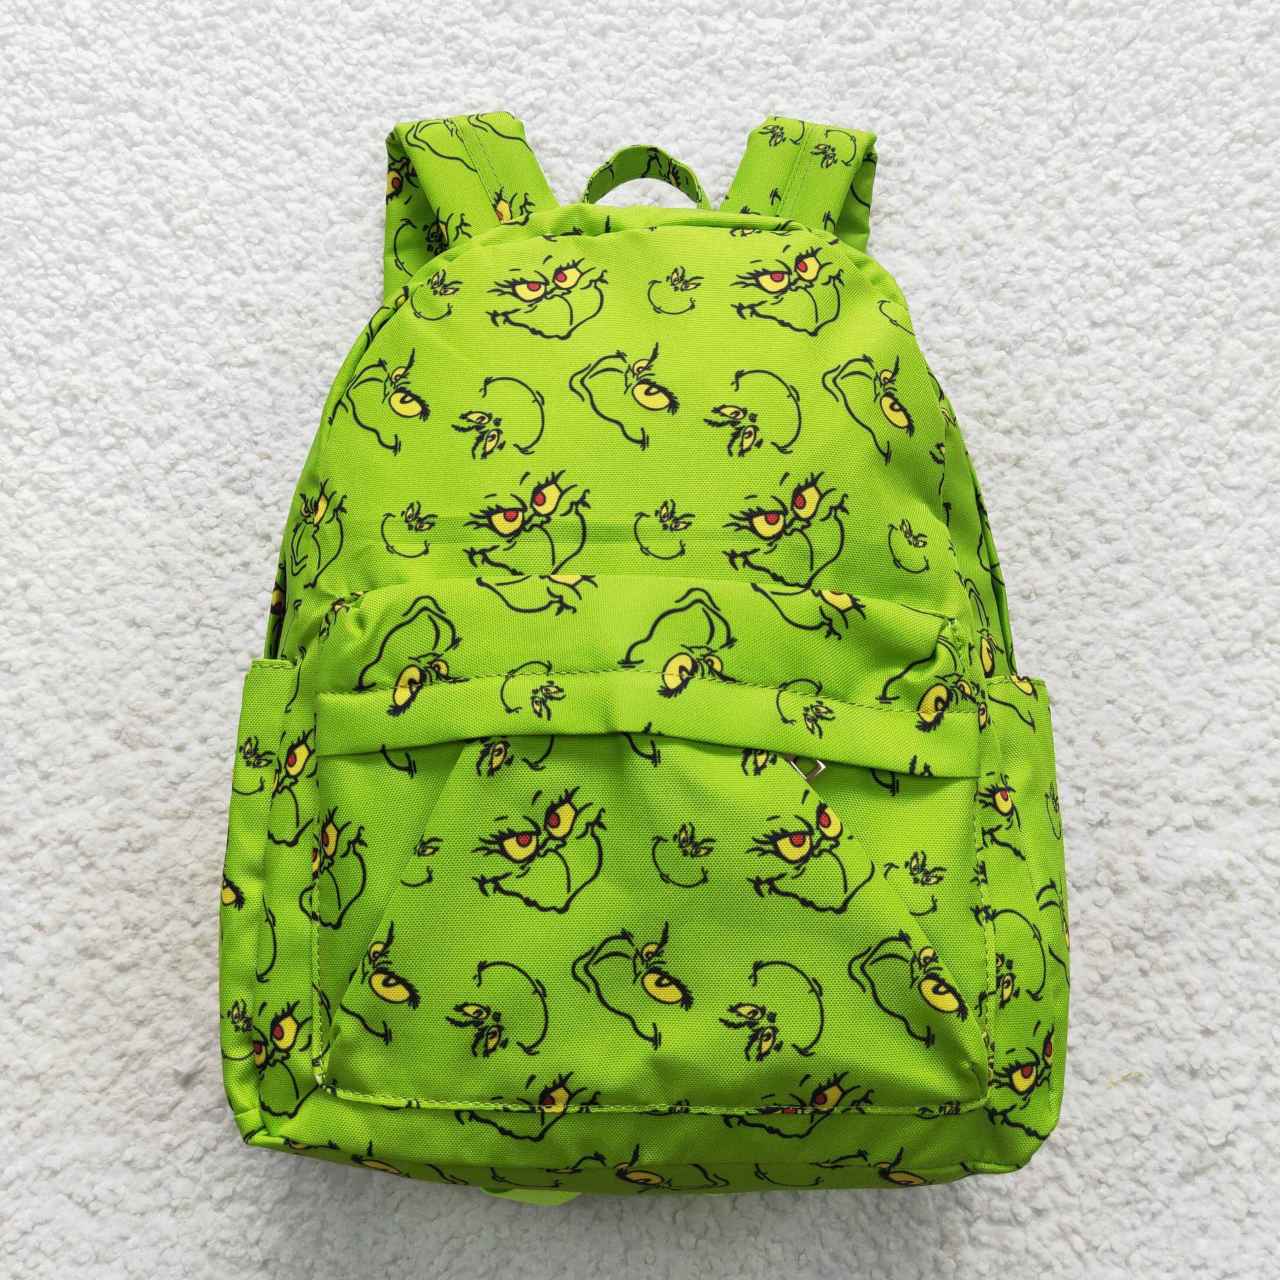 BA0119 Green Monster Green Backpack